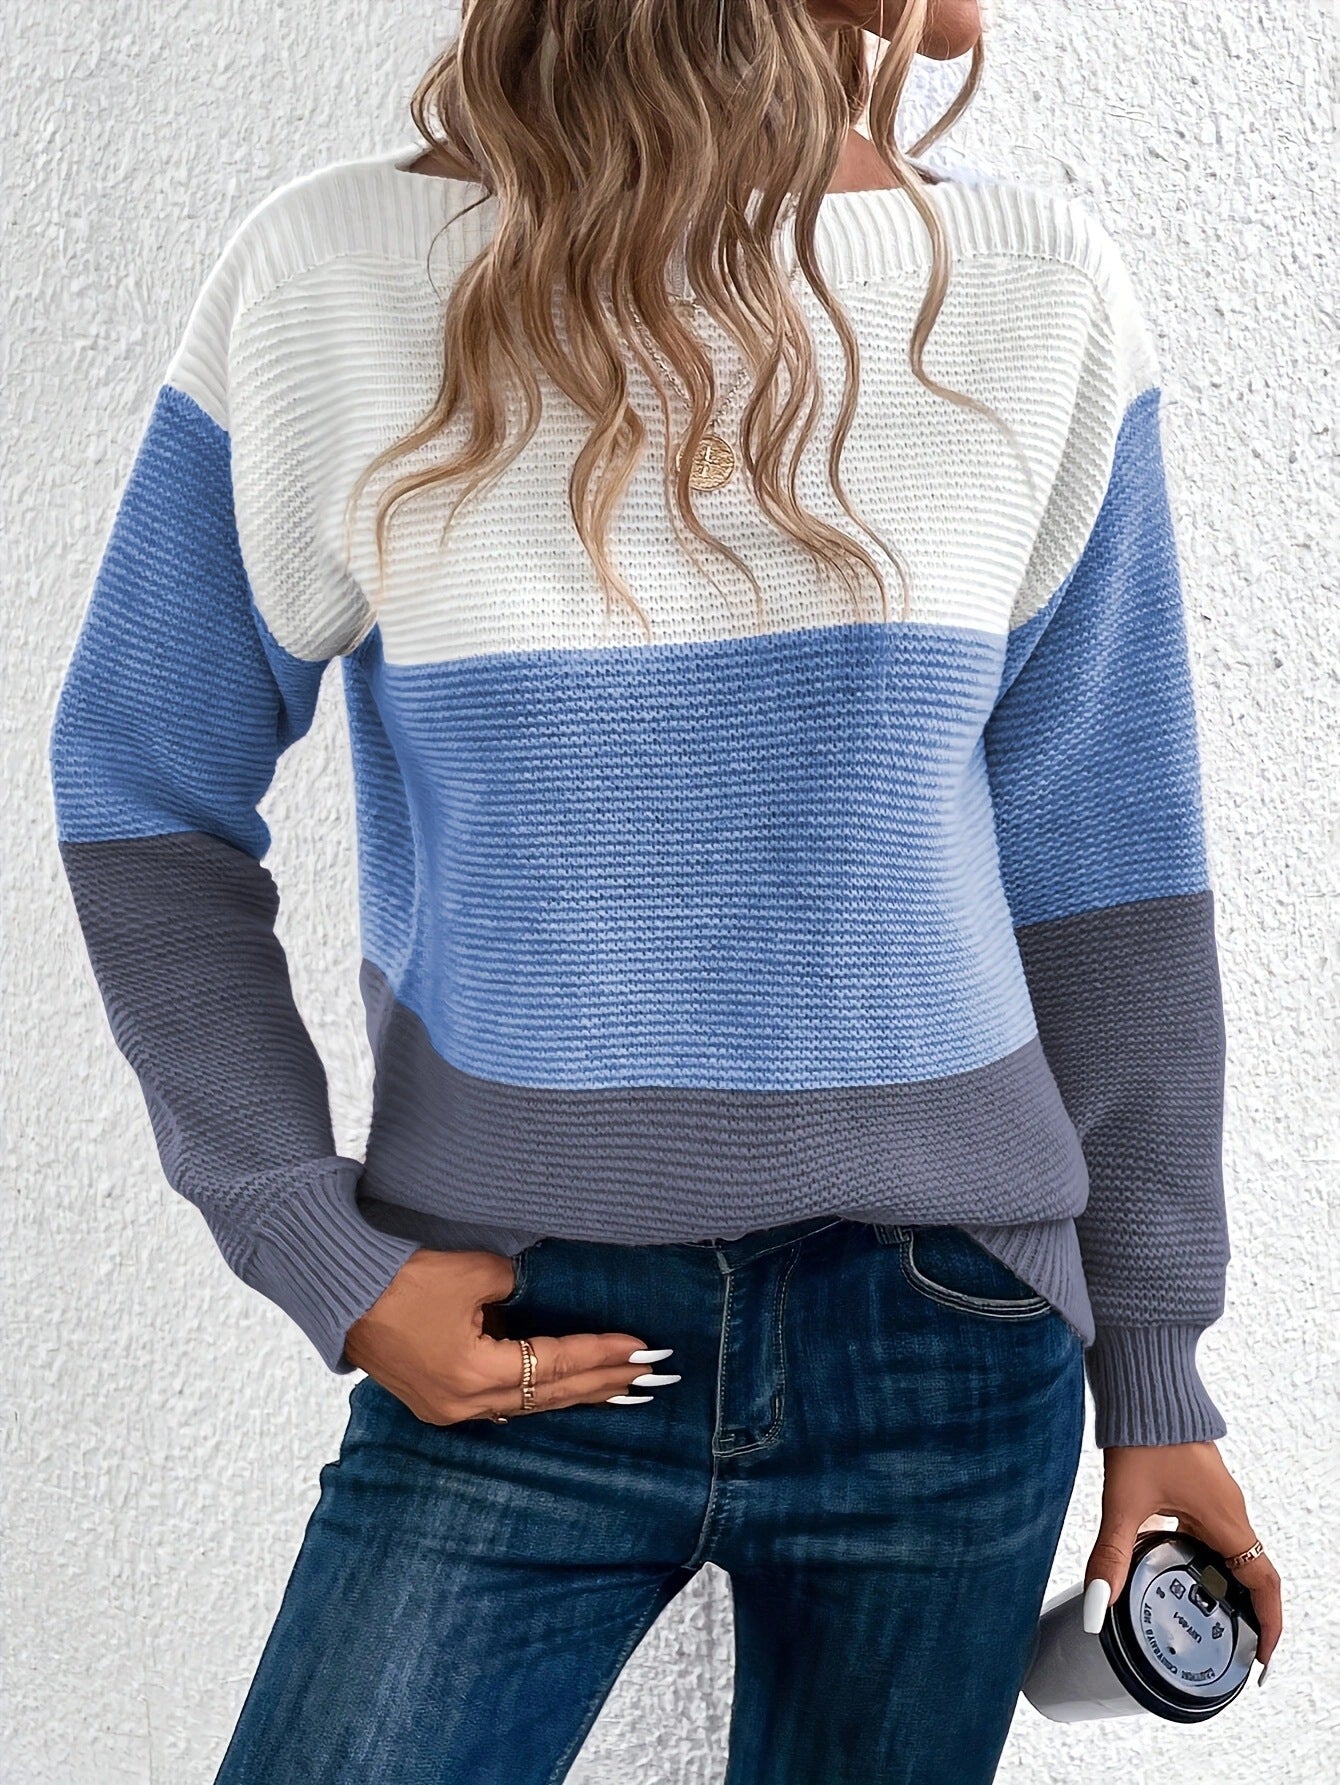 Jo-Ann | Knit Sweater